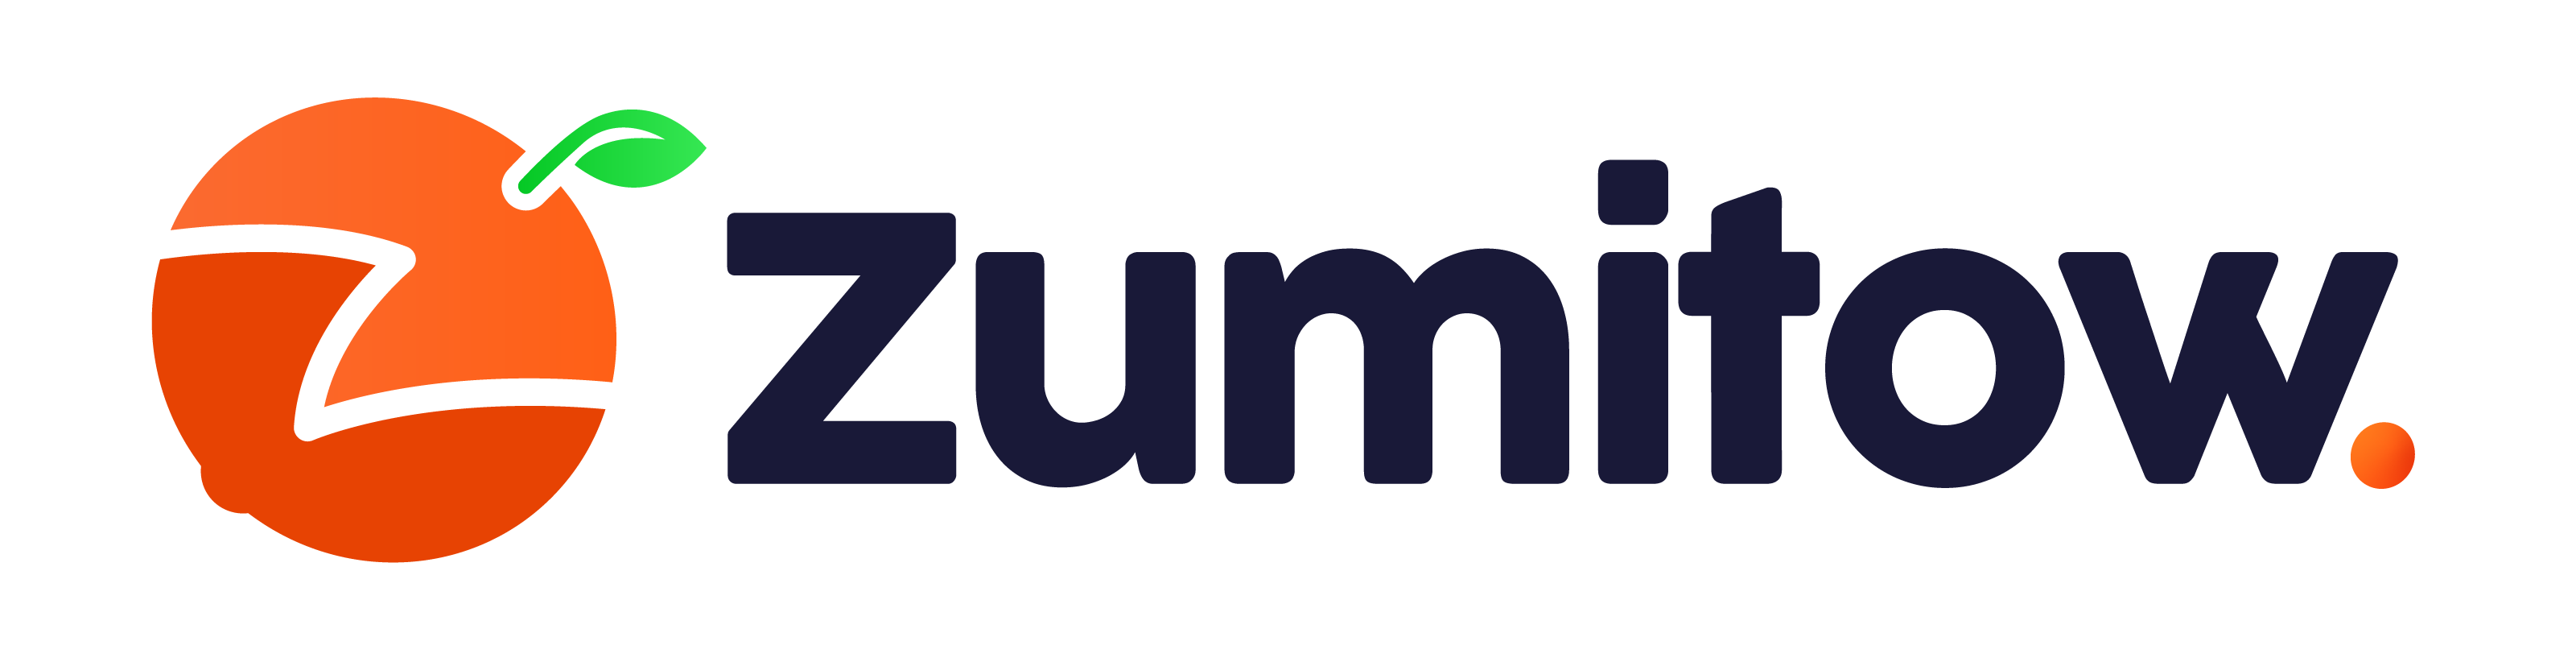 Zumitow es el newsletter